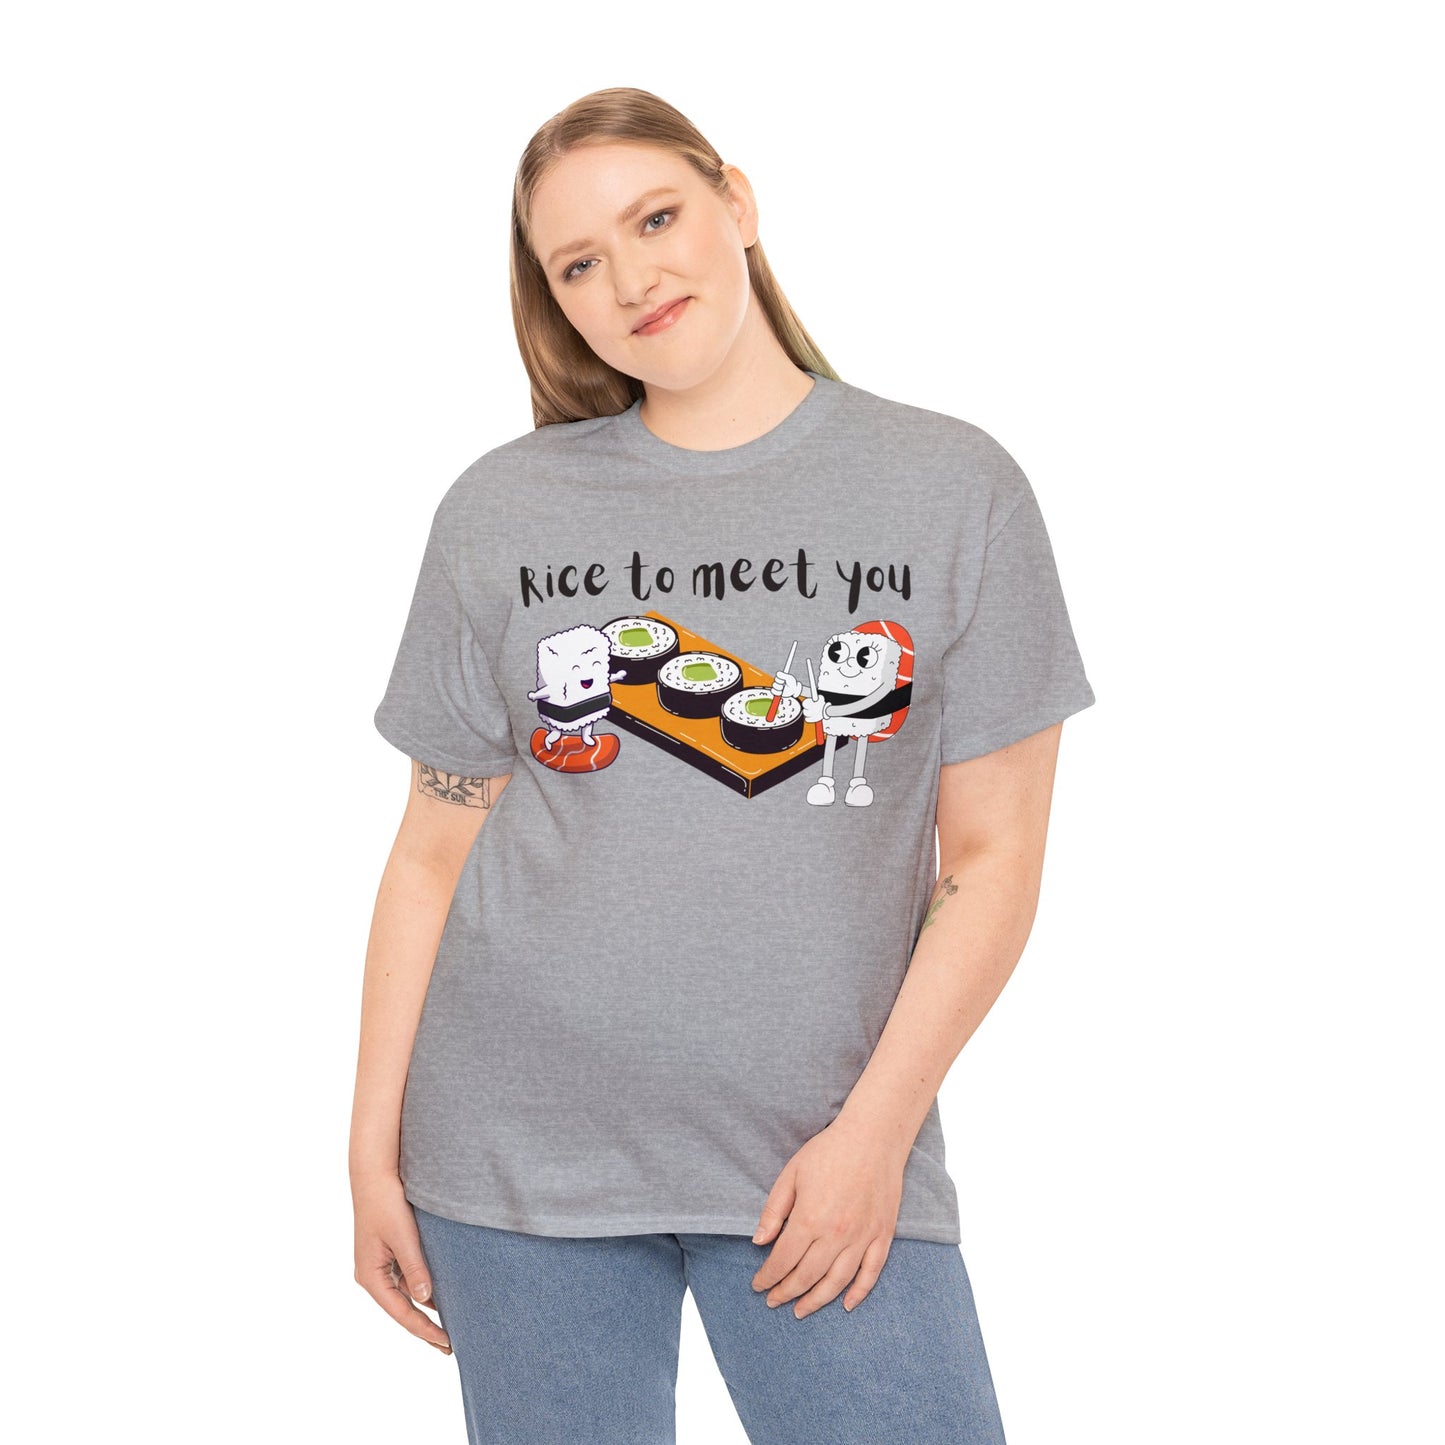 Sushi "Rice to Meet You" T-Shirt, Food Pun Tee